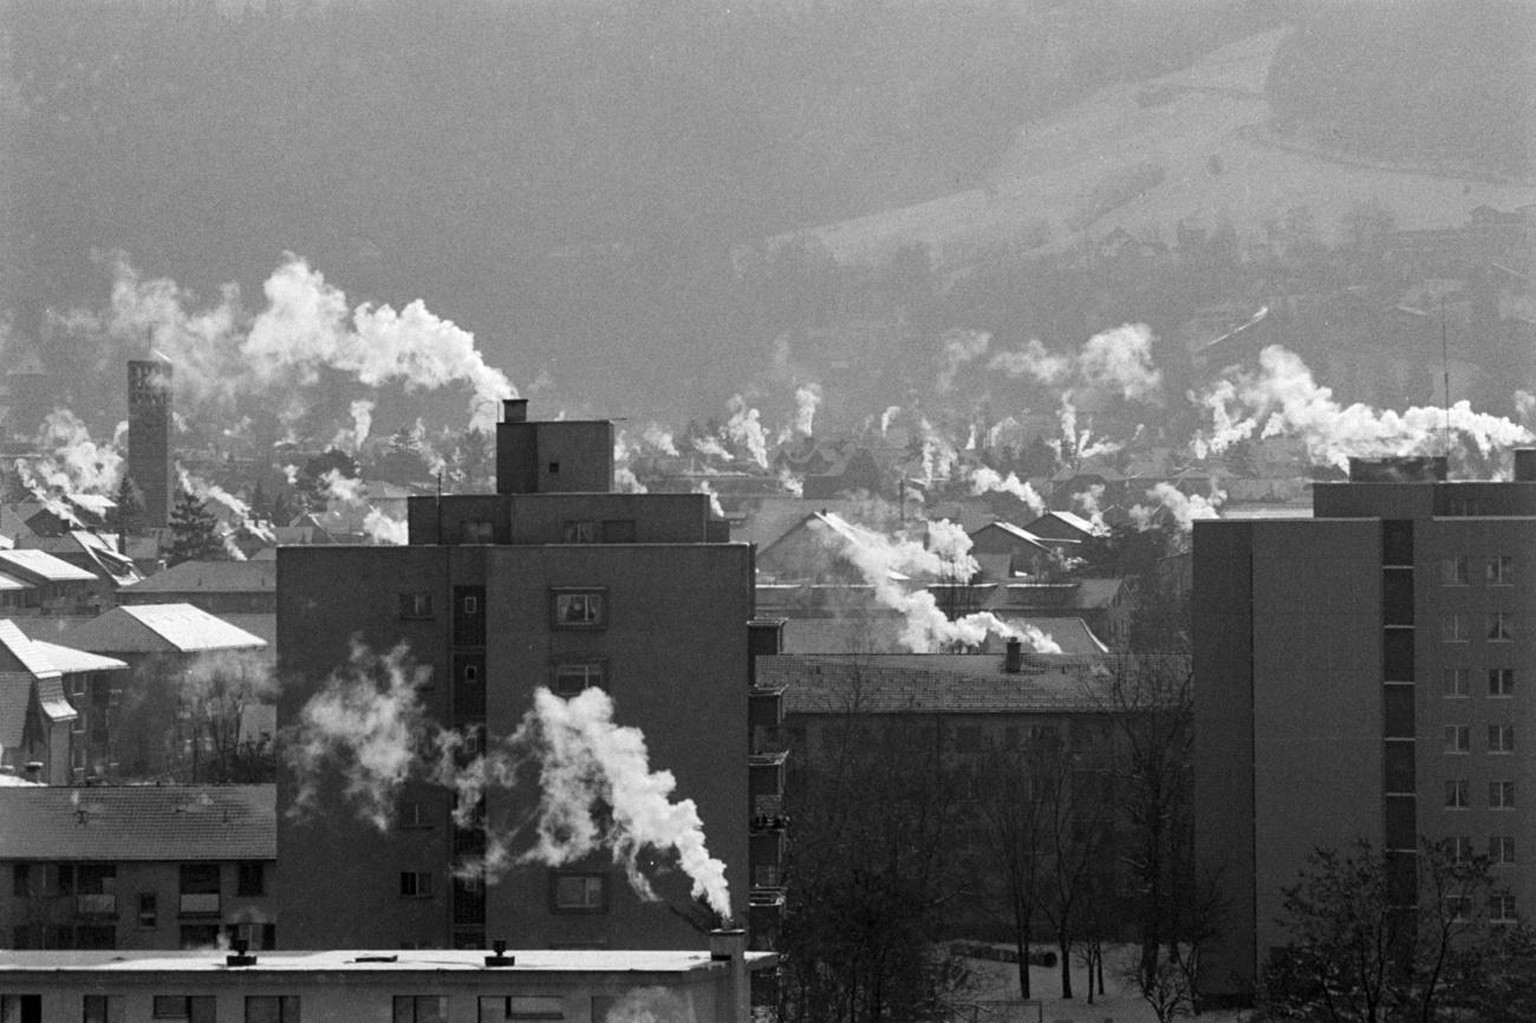 Rauchende Kamine von Privathaeusern bei winterlichen Temperaturen in der Stadt Chur, aufgenommen am 12. Januar 1987. (KEYSTONE/Arno Balzarini)